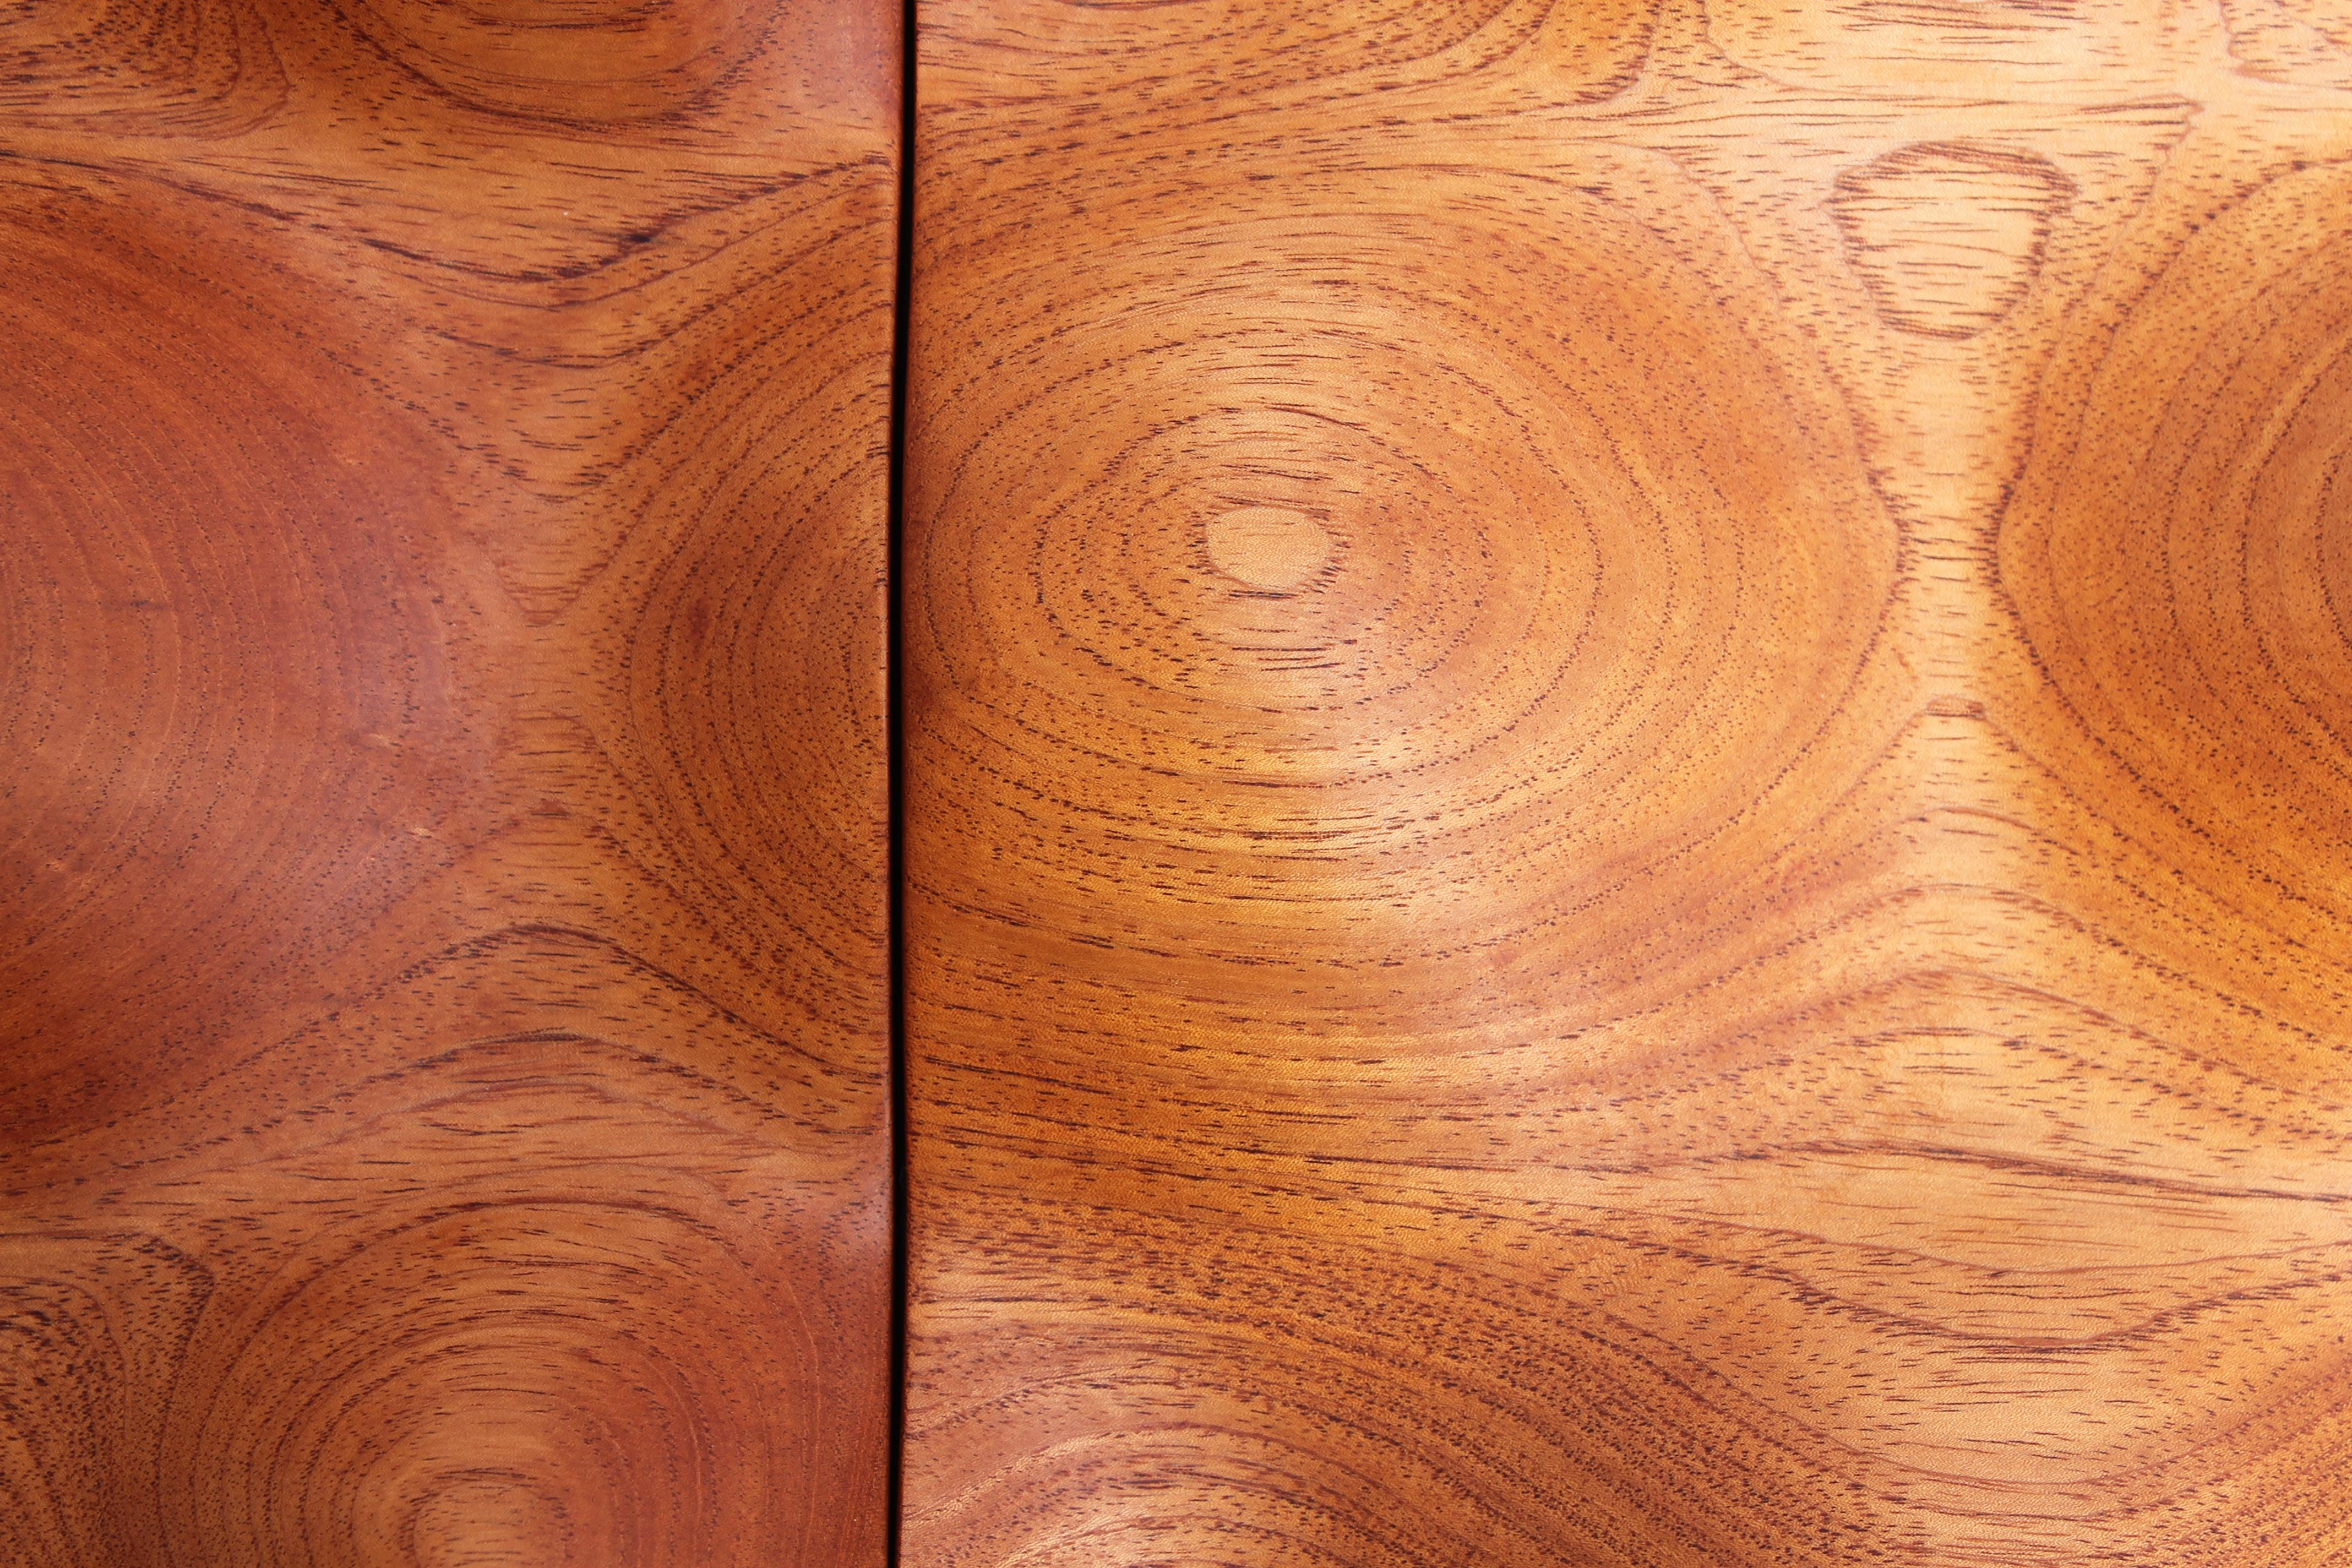 Brazilian Ondear wood centerpiece (pink cedar wood) For Sale